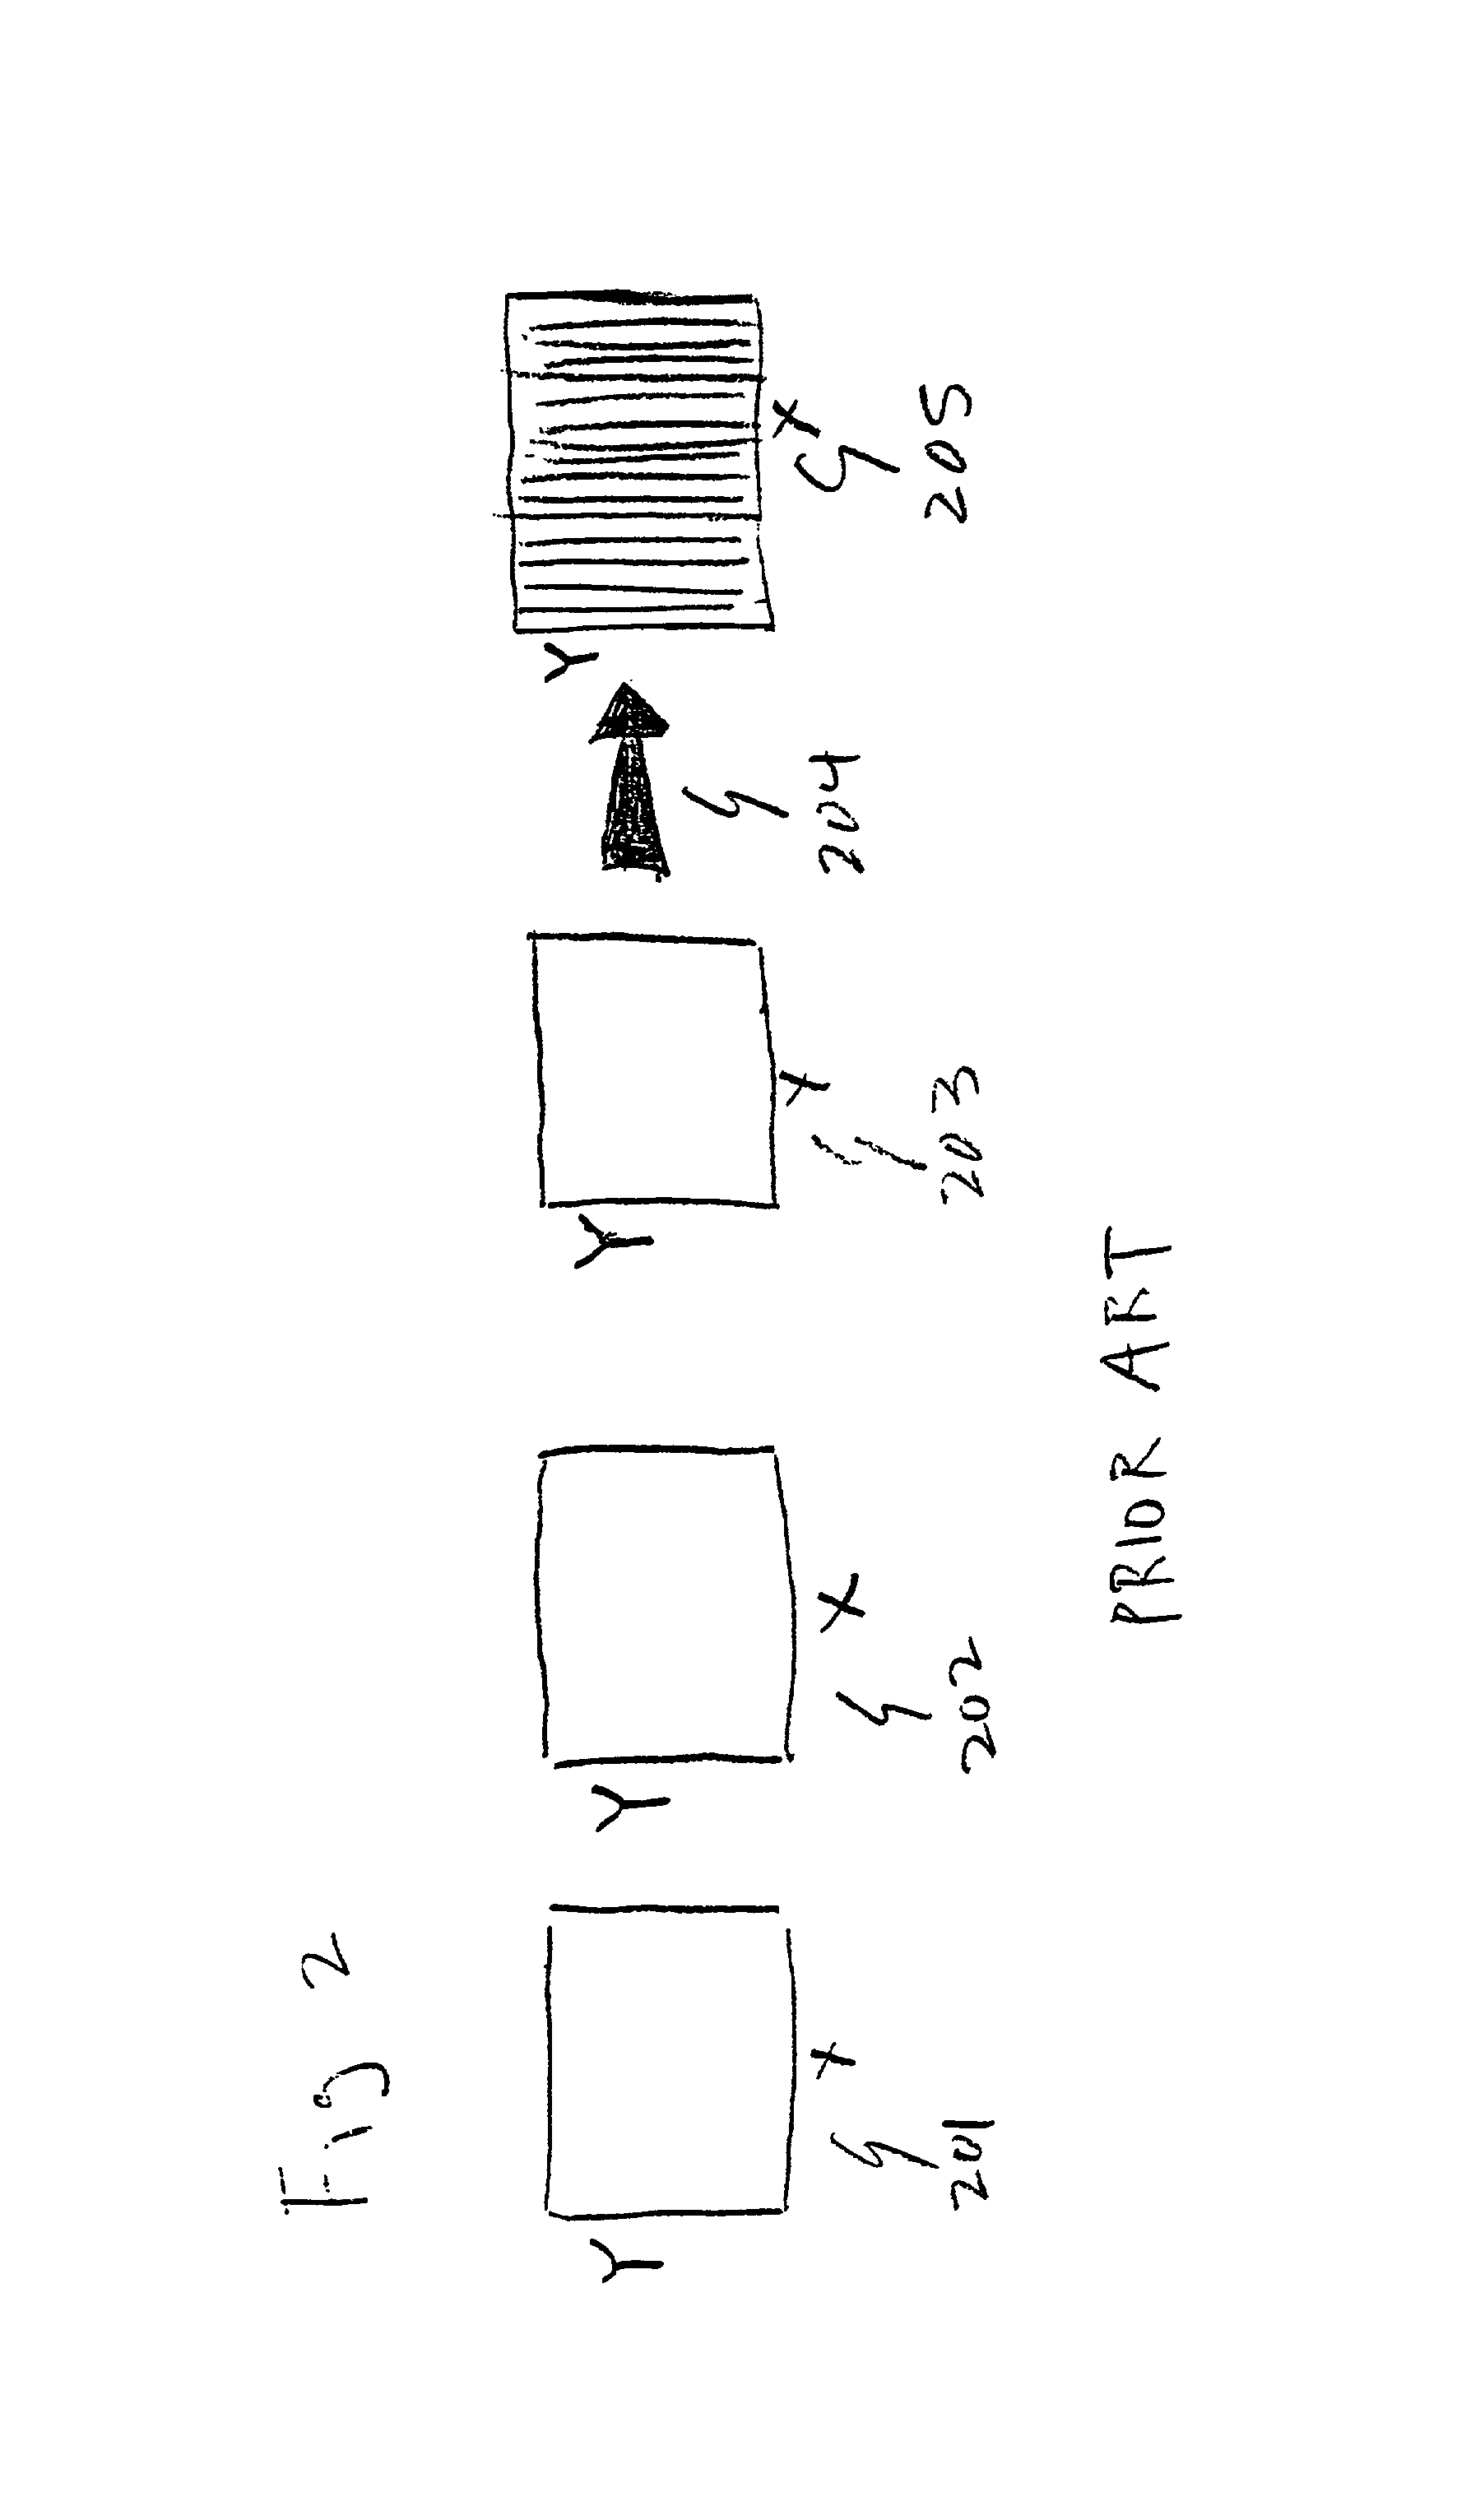 Autostereoscopic pixel arrangement techniques